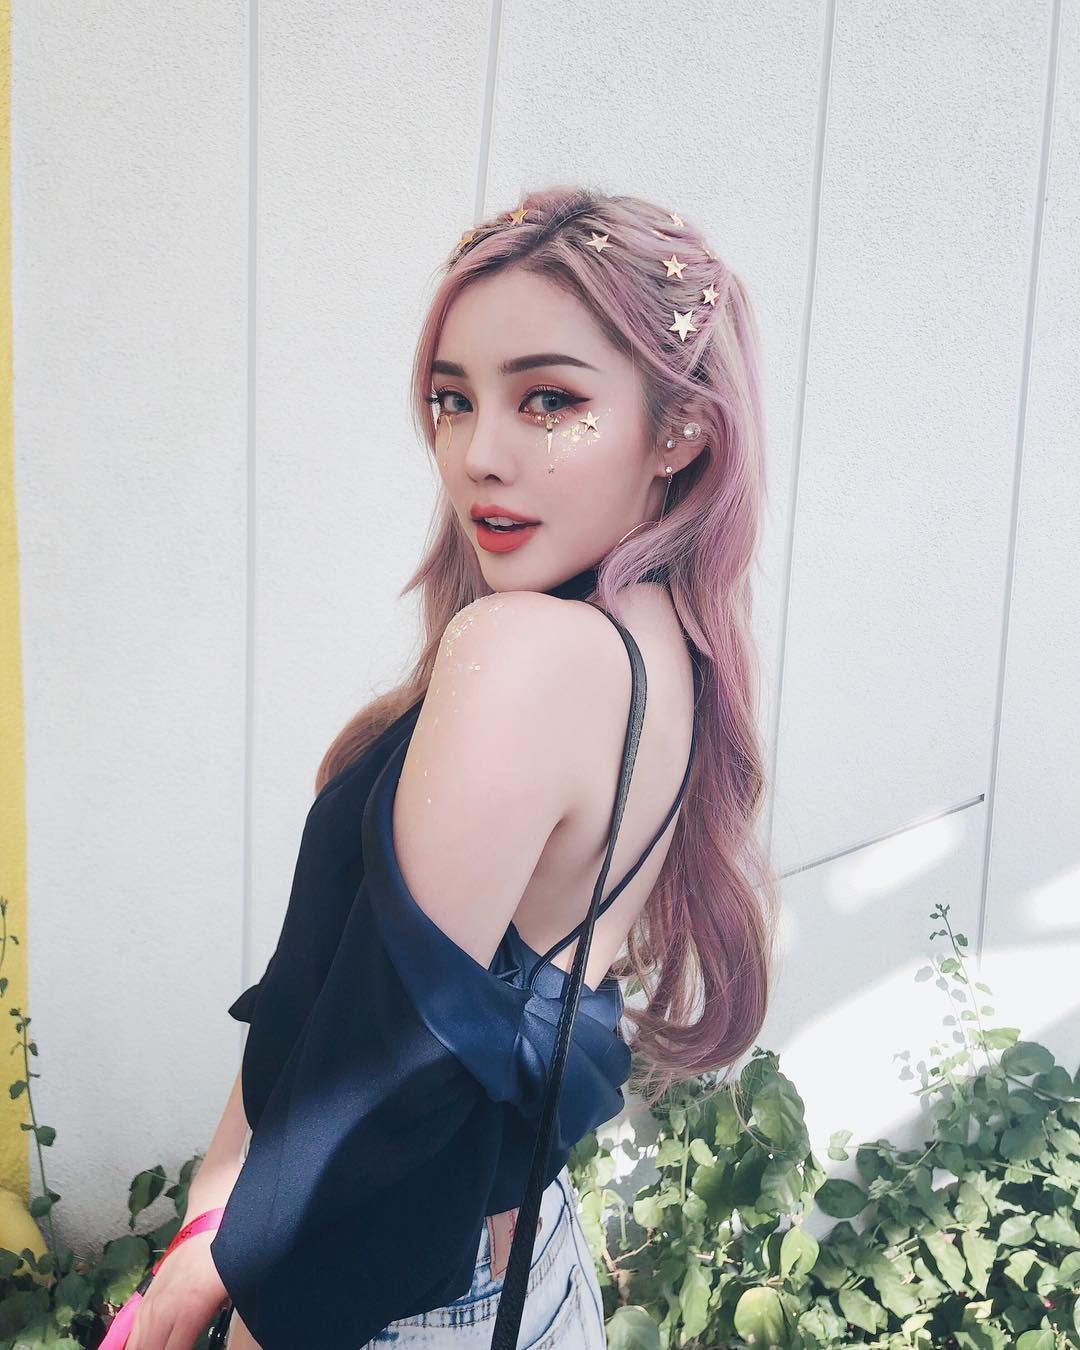 PONY ?? on Instagram: “Starry for #coachella рџЊџ day 1 look! :)” -   14 makeup Korean pony ideas